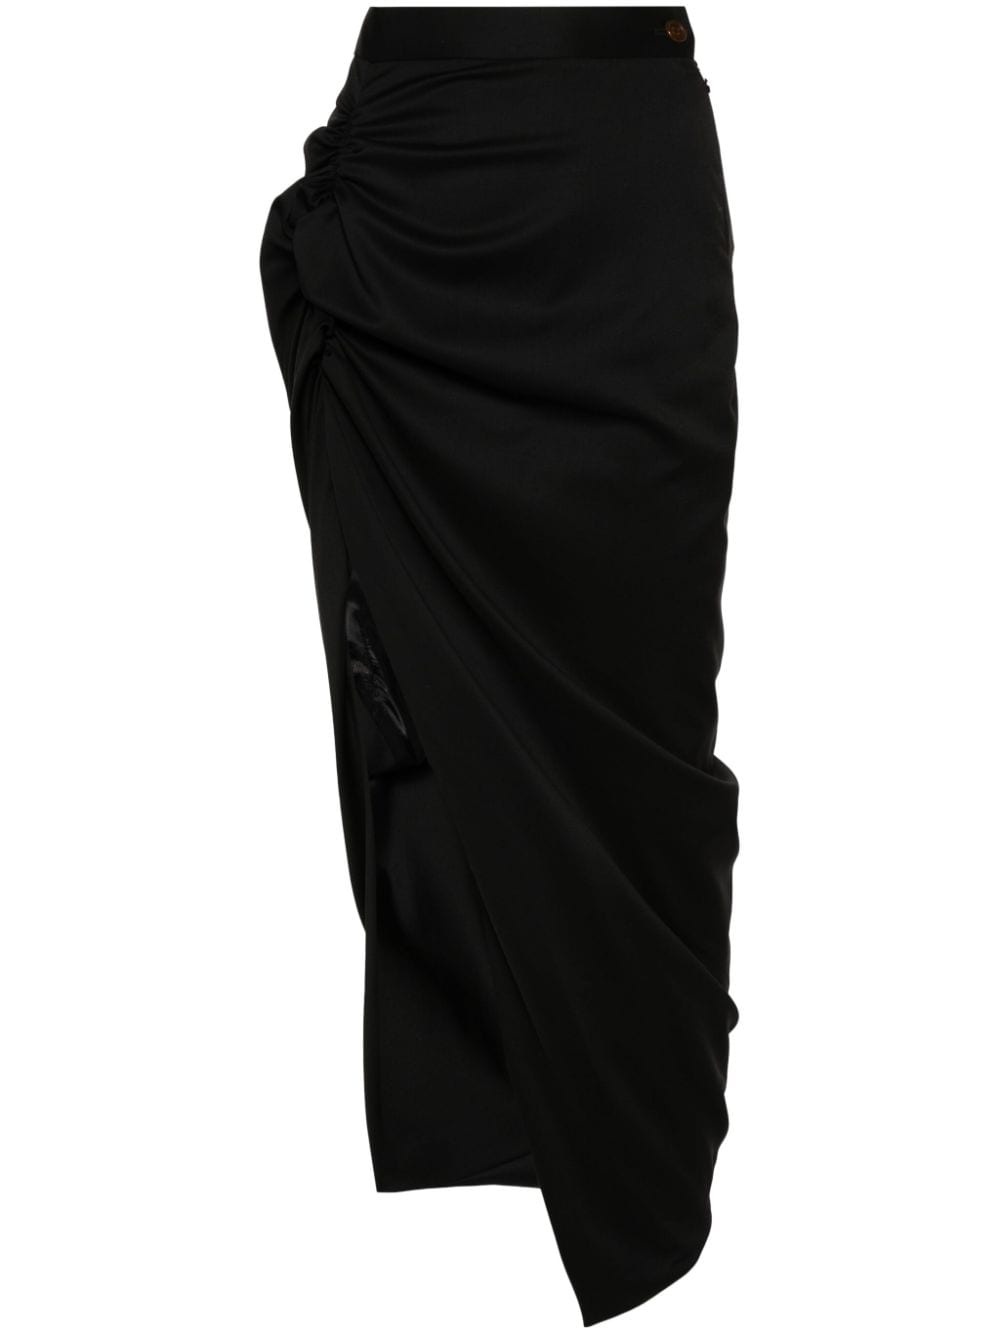 draped-detail skirt - 1